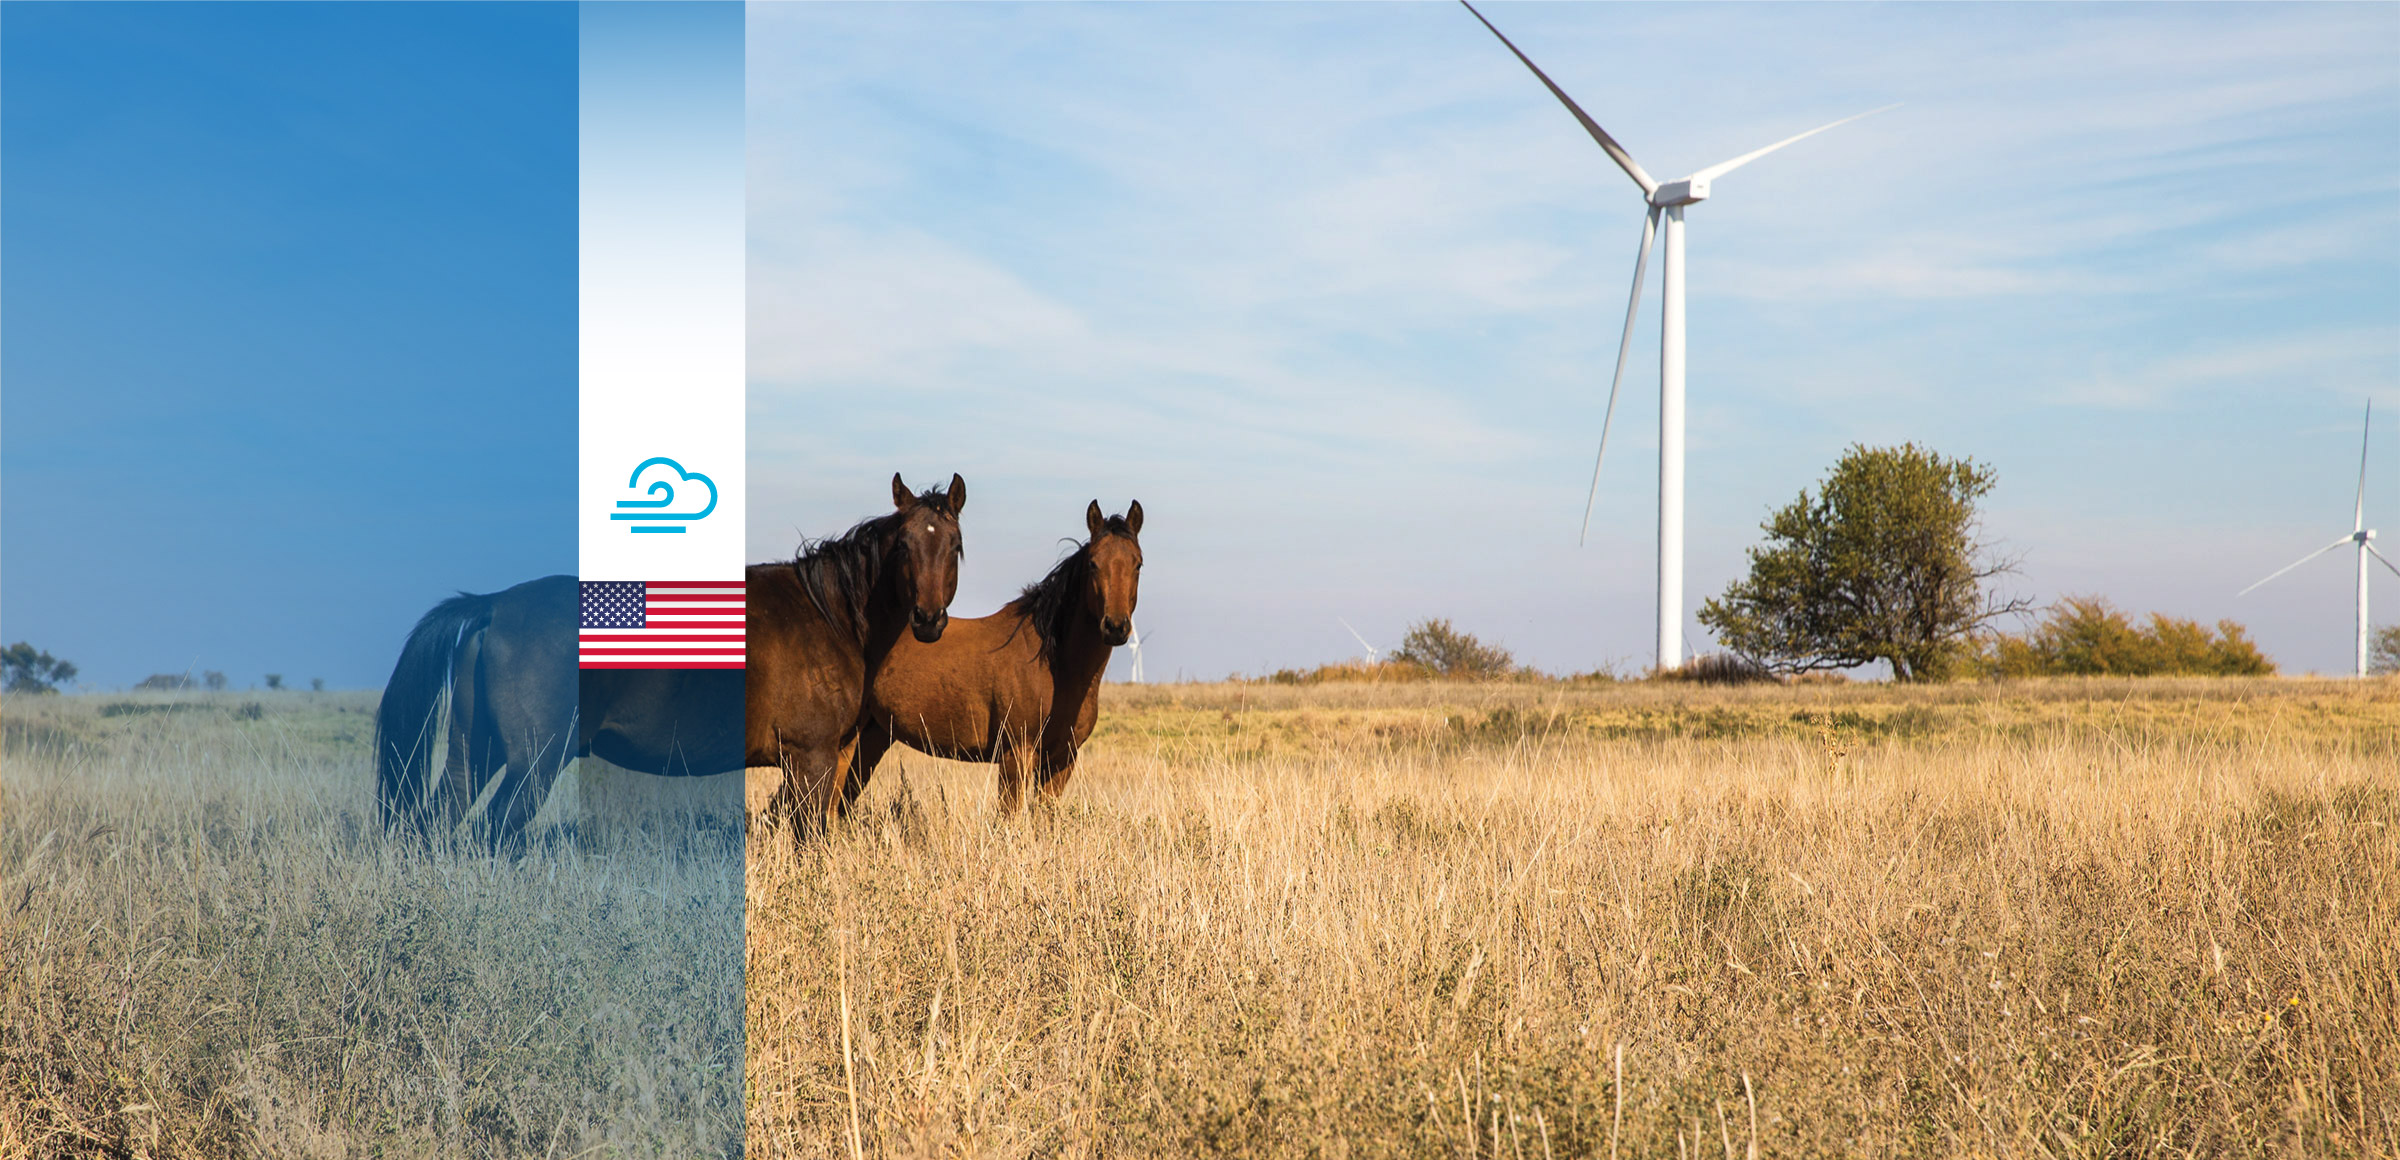 Un nuovo impulso all'economia locale, grazie al parco eolico di Red Dirt in Oklahoma